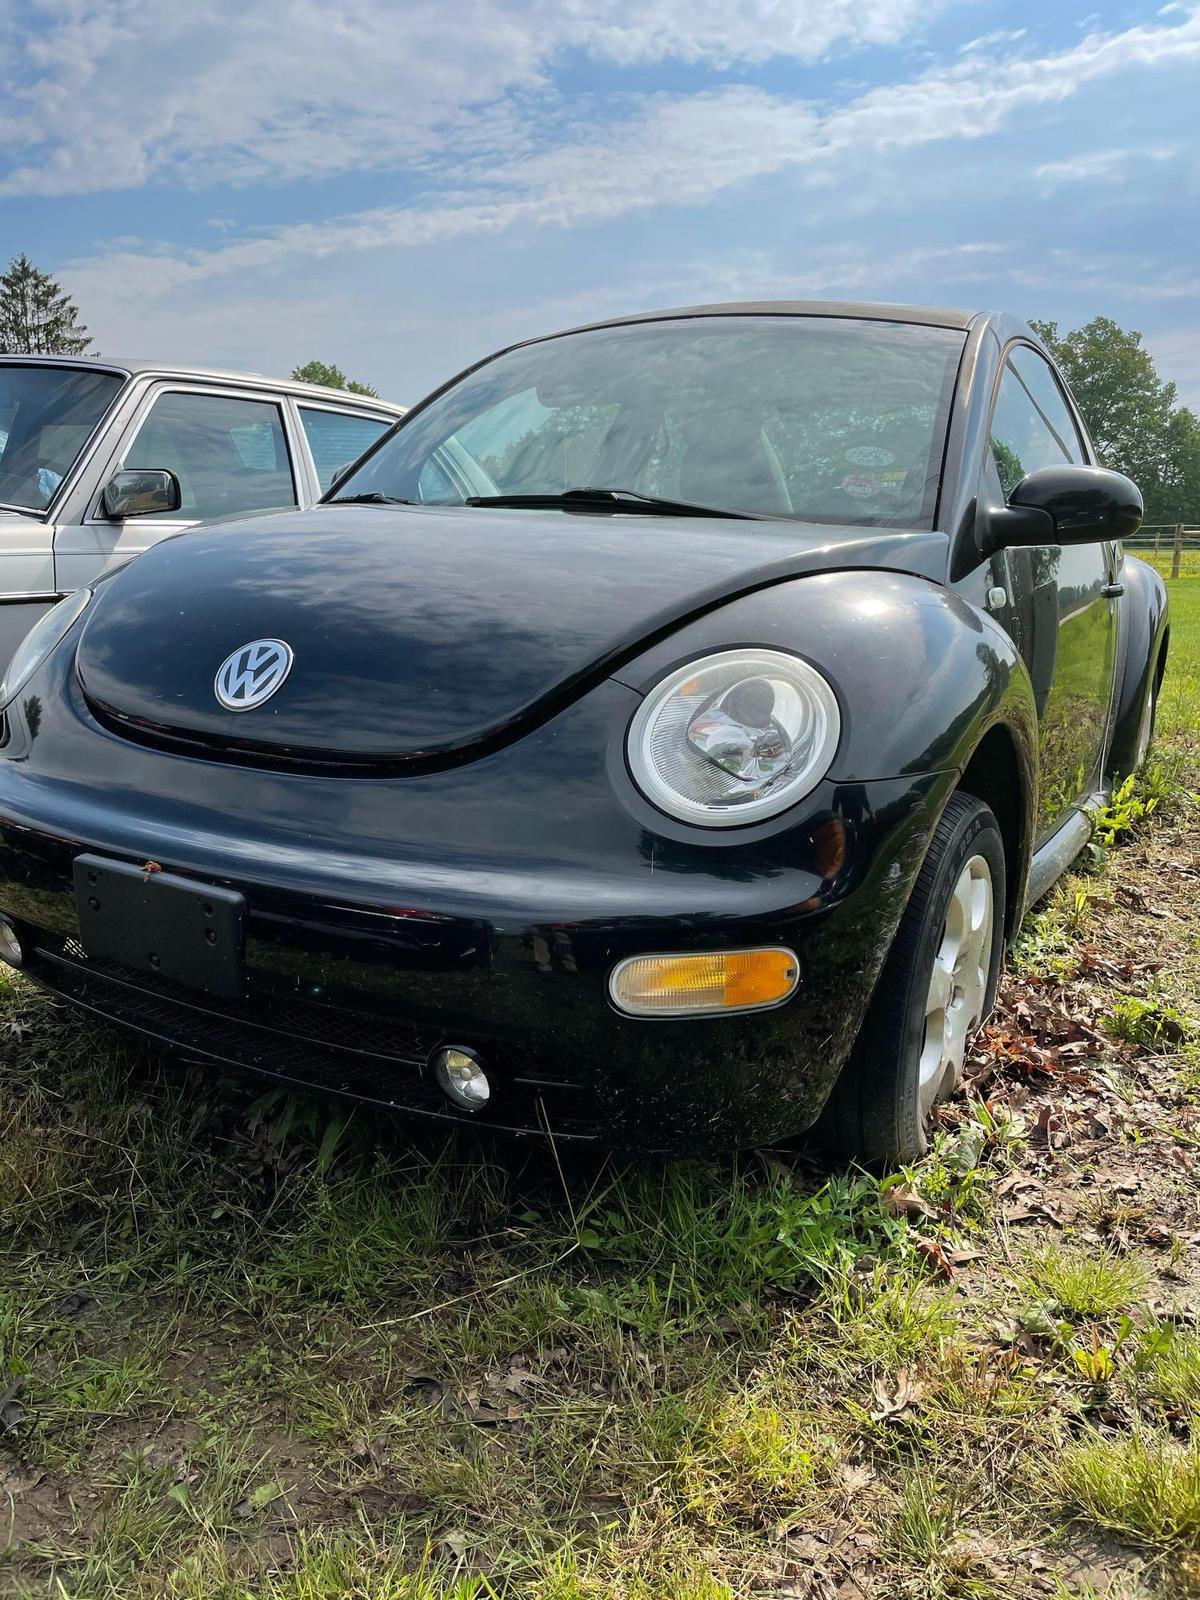 2001 Volkswagen Beetle, Miles Unknown, Diesel, Runs on Biofuel, Unknown Miles